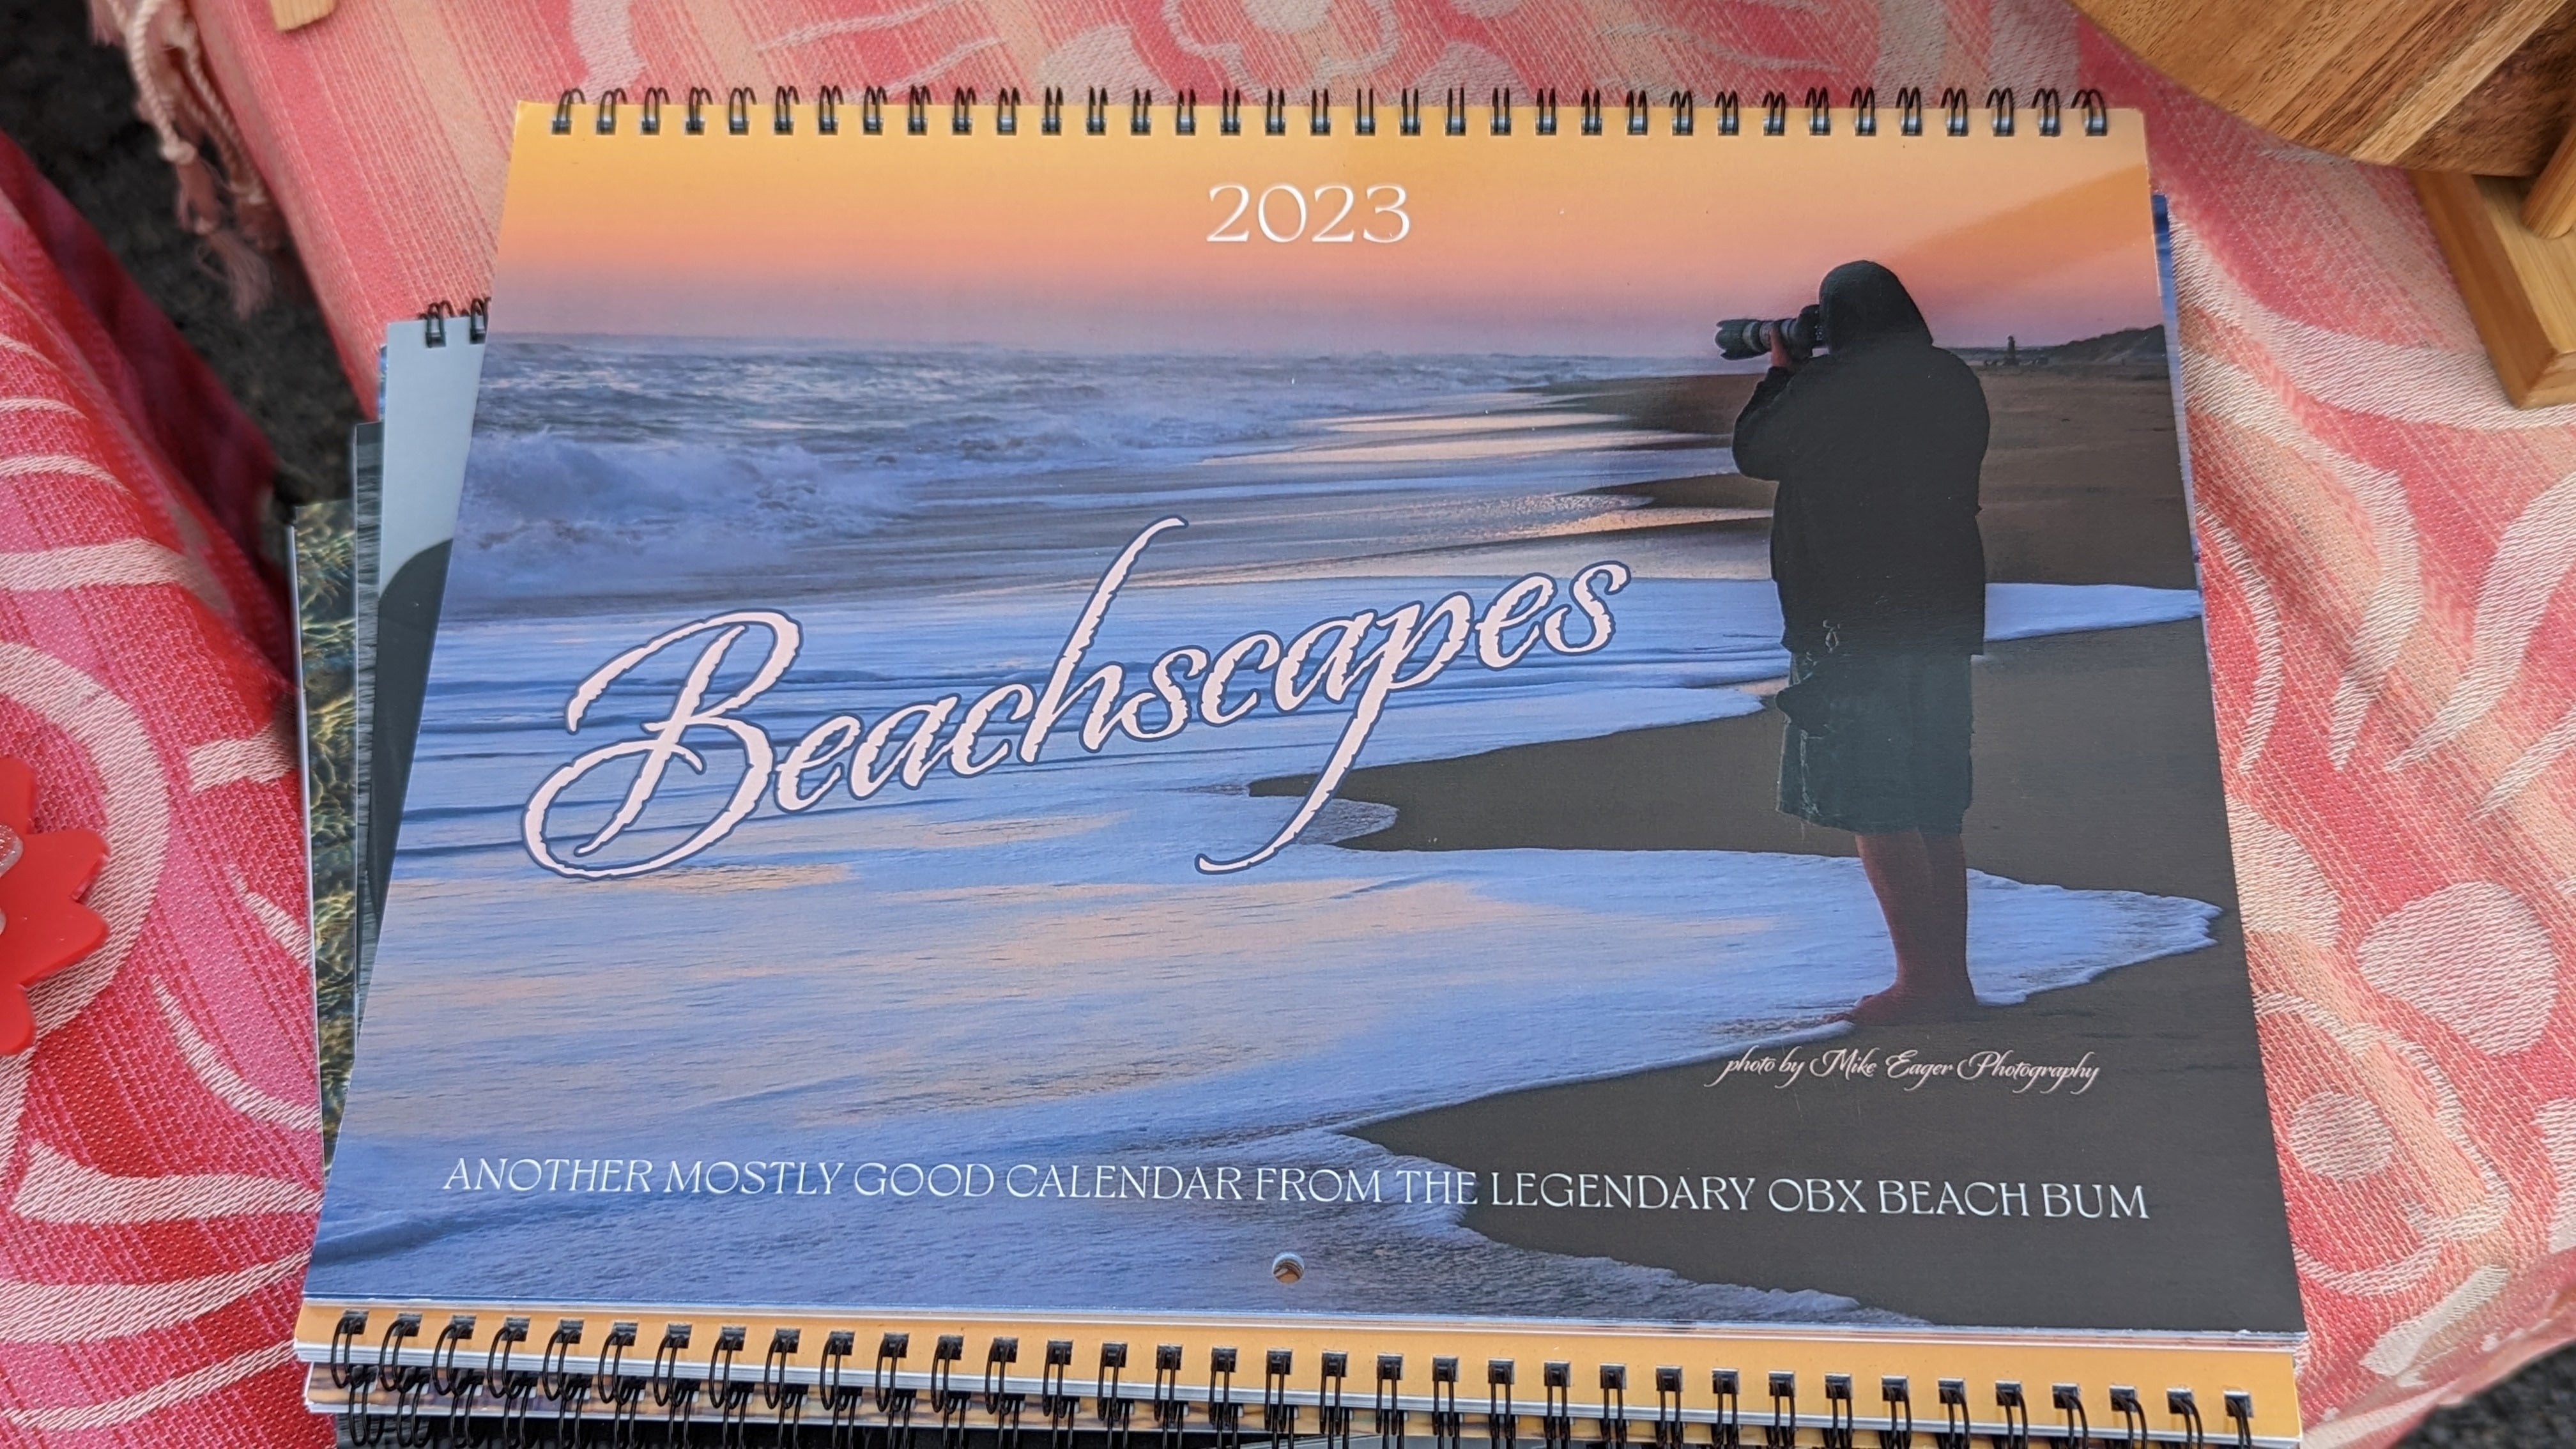 The OBX Beach Bum 2023 Calendar